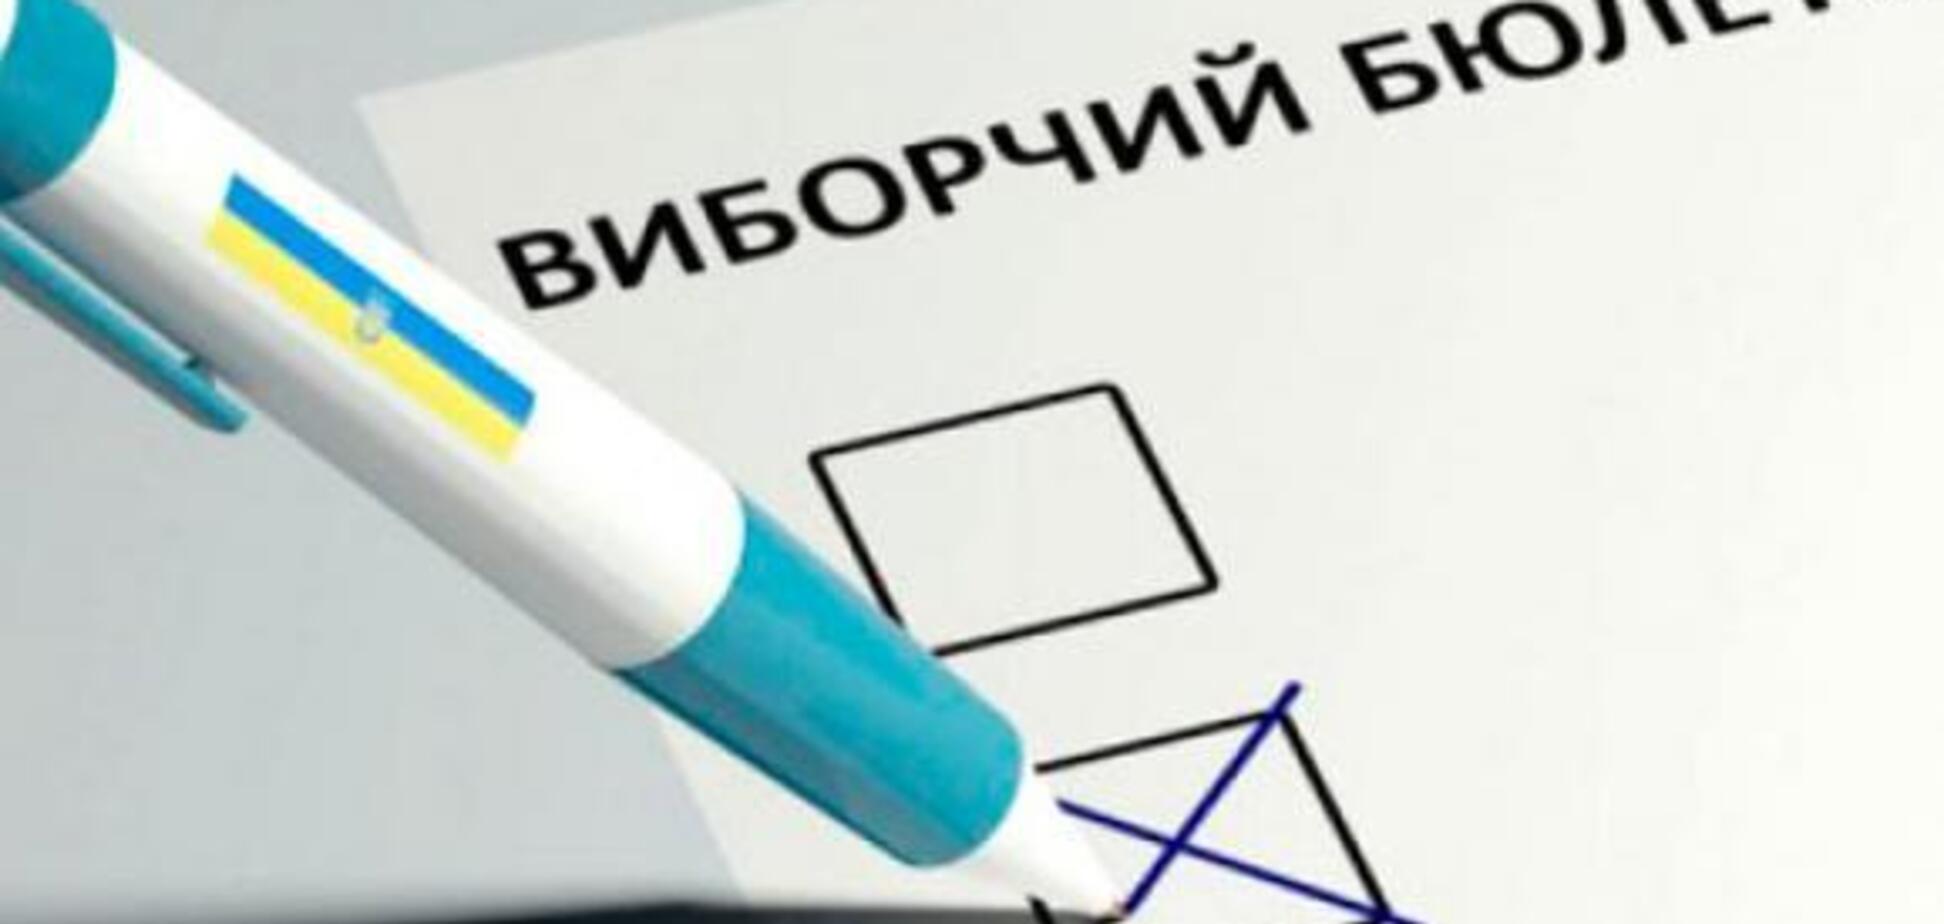 Нога в ногу: названы три фаворита второго тура выборов президента Украины